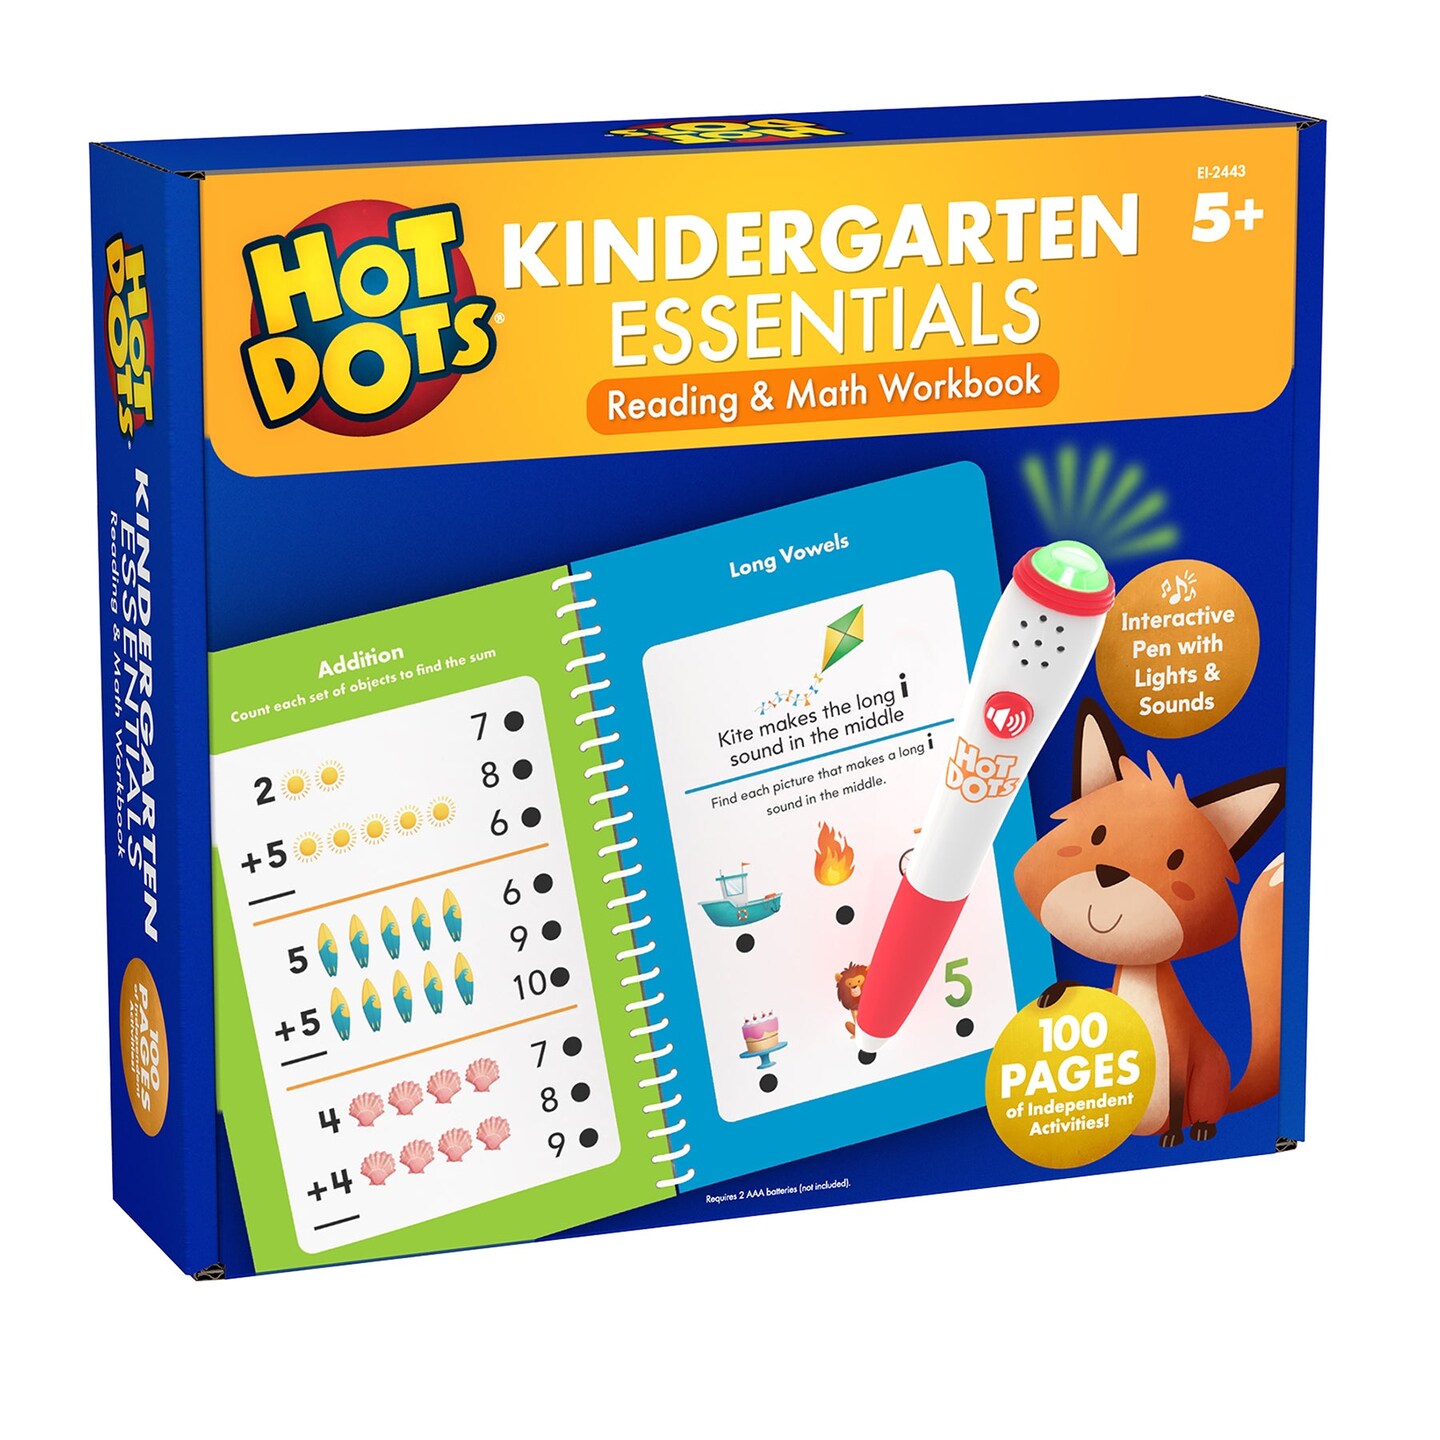 Hot Dots&#xAE; Kindergarten Essentials Reading &#x26; Math Workbook